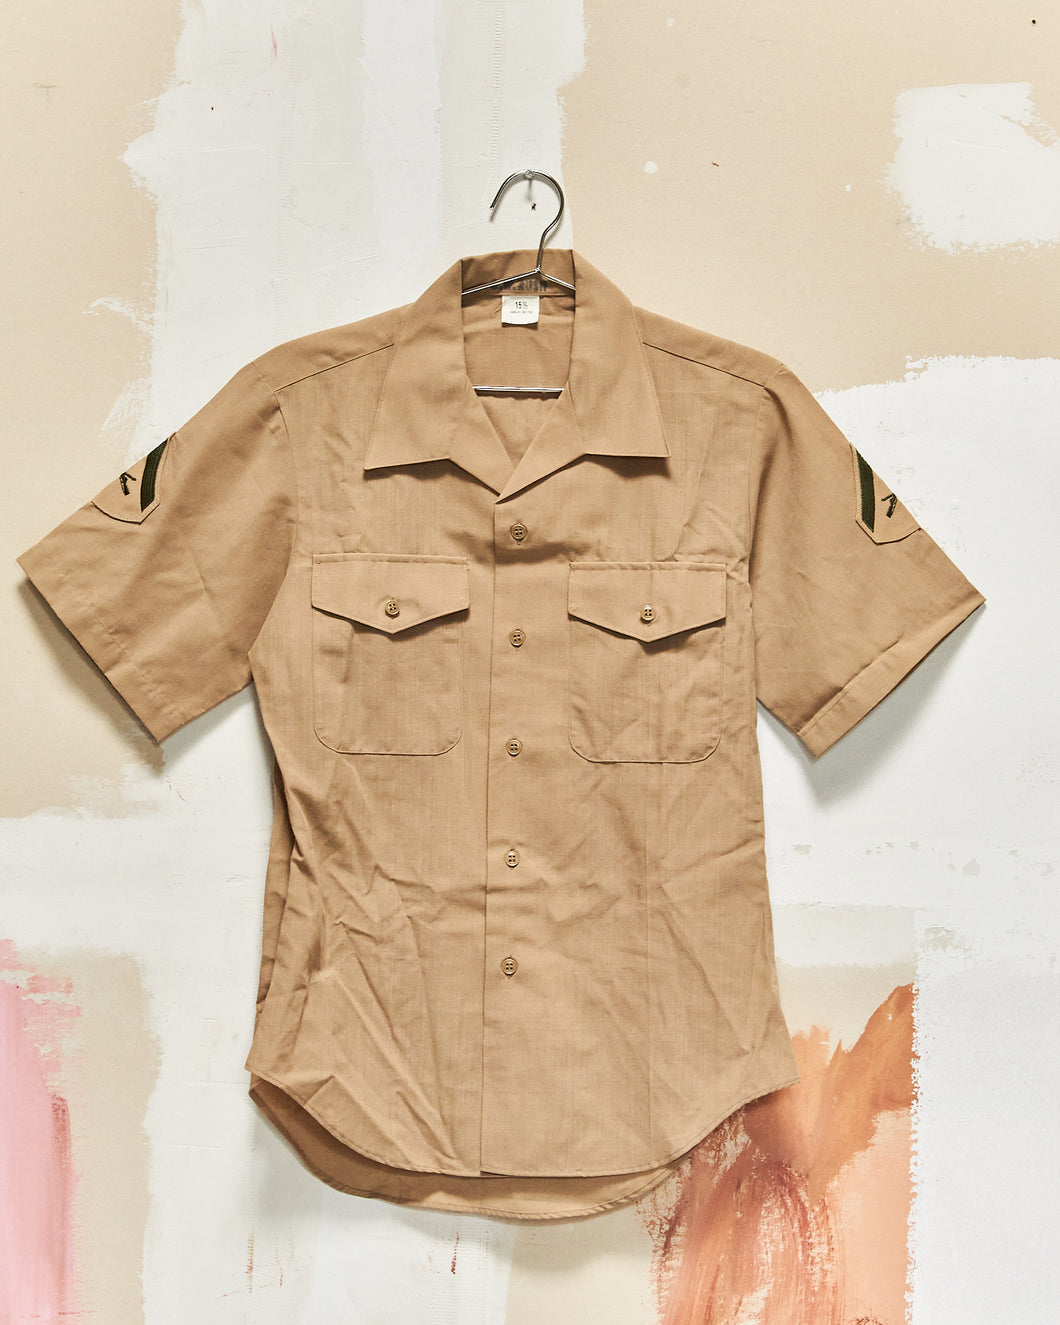 1987 USMC Khaki Patched Uniform Shirt